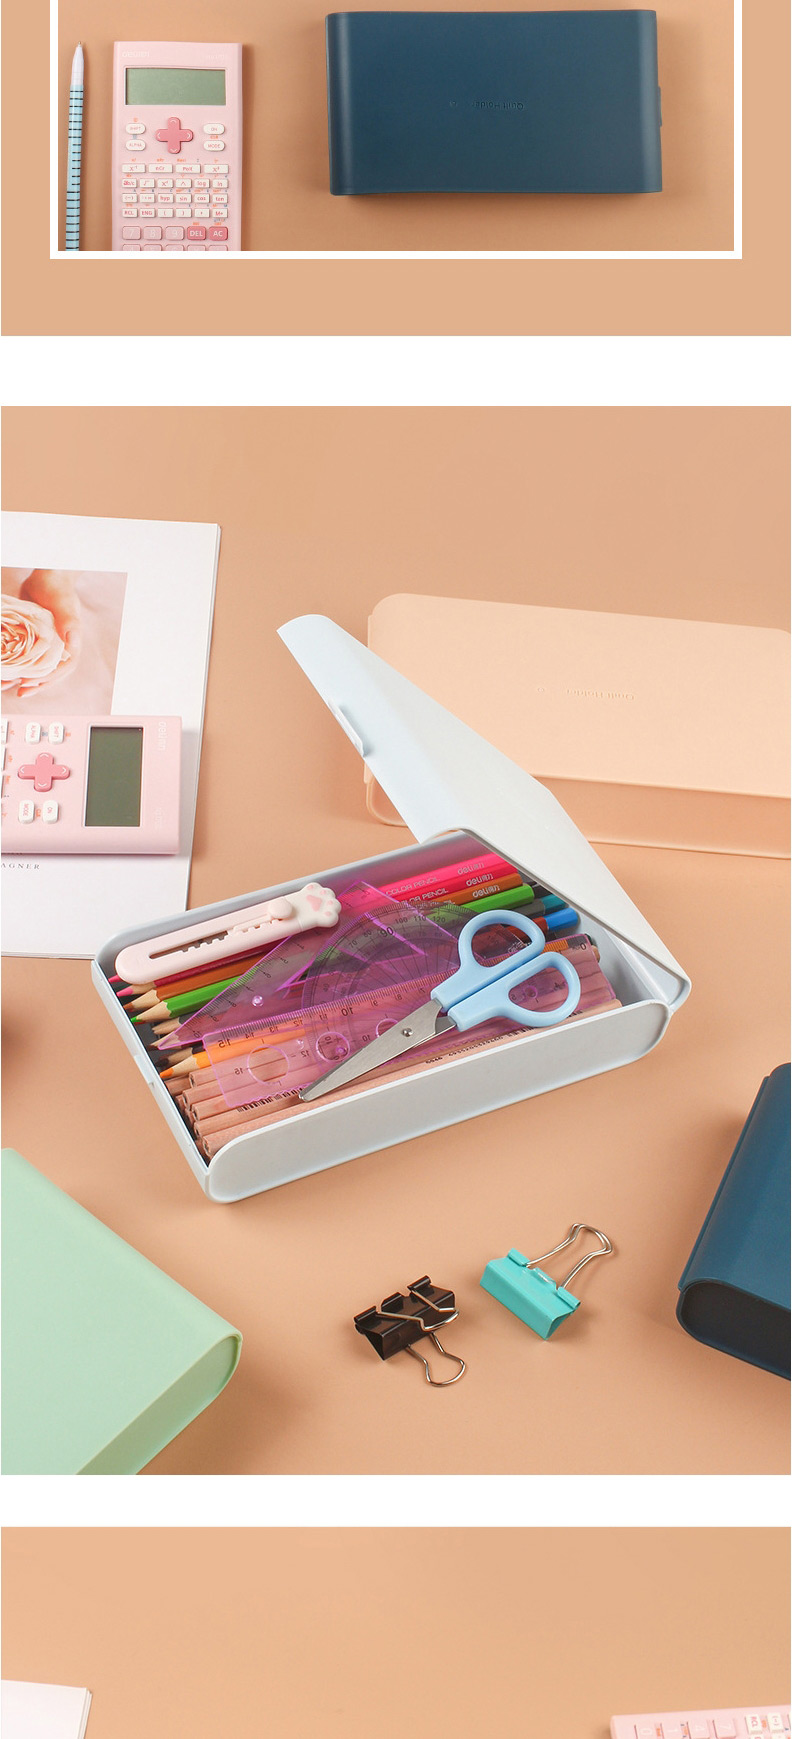 Fashion Khaki Solid Color Plastic Large Capacity Pencil Case Storage Box,Pencil Case/Paper Bags